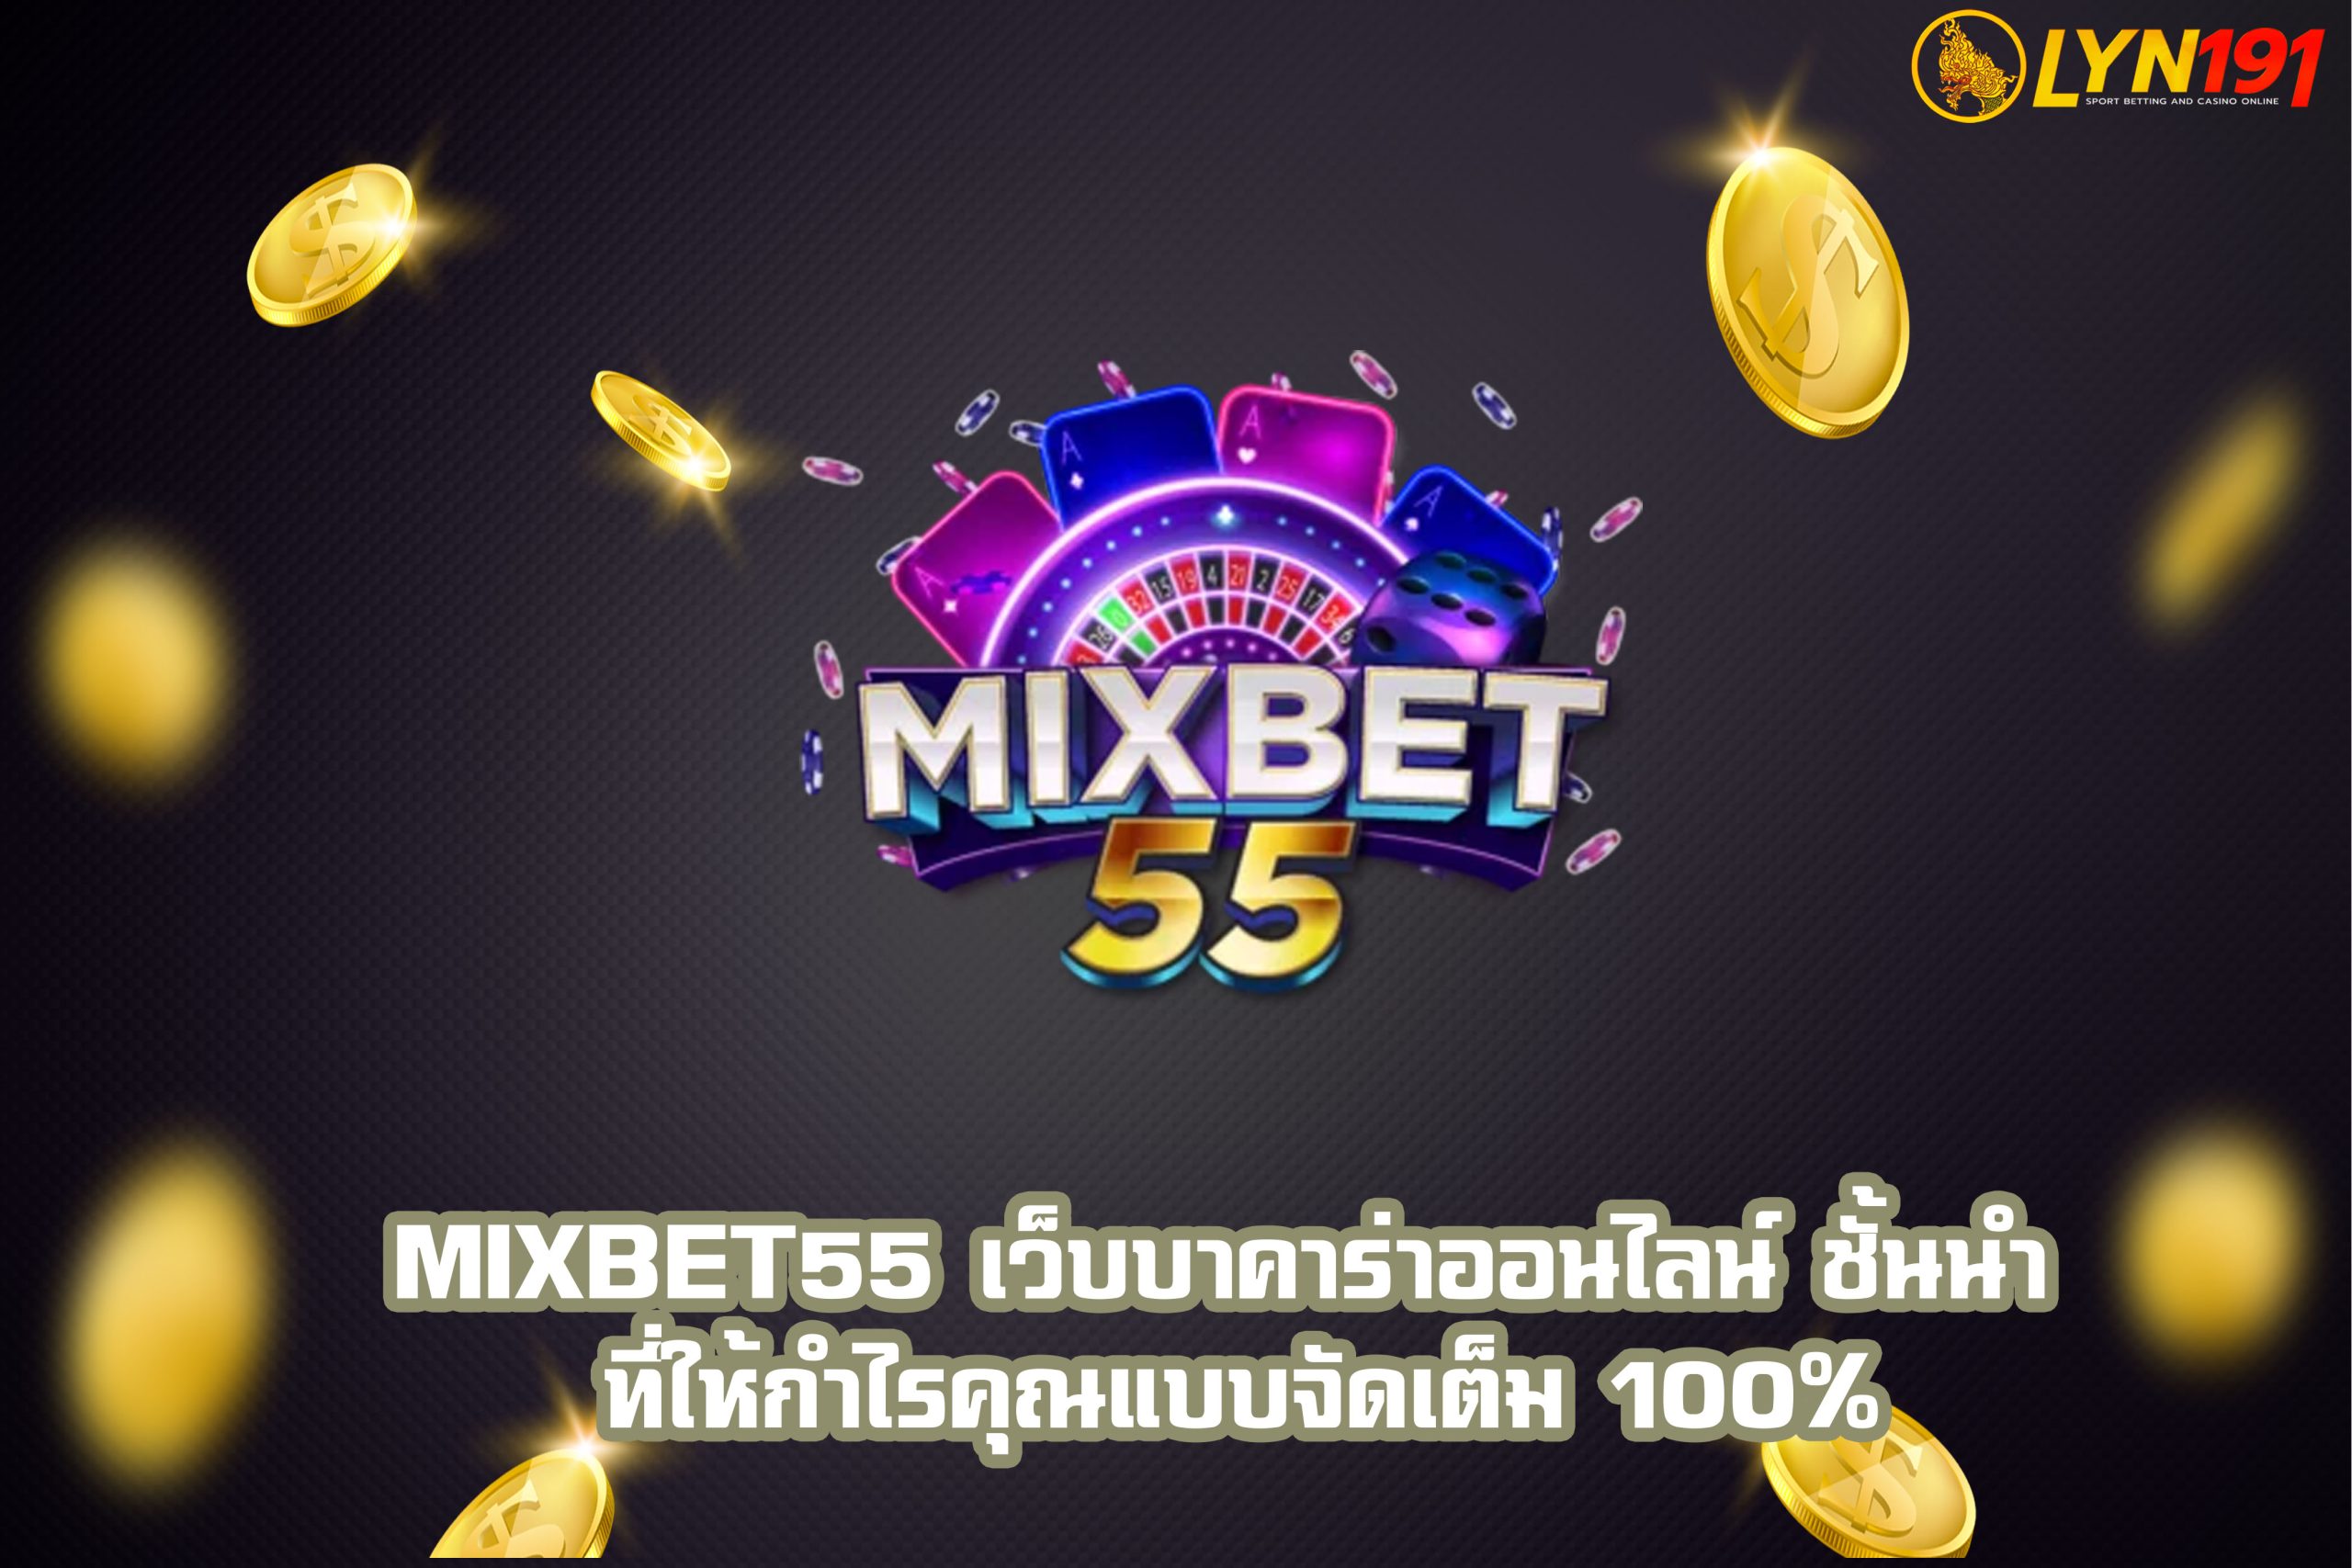 Mixbet55